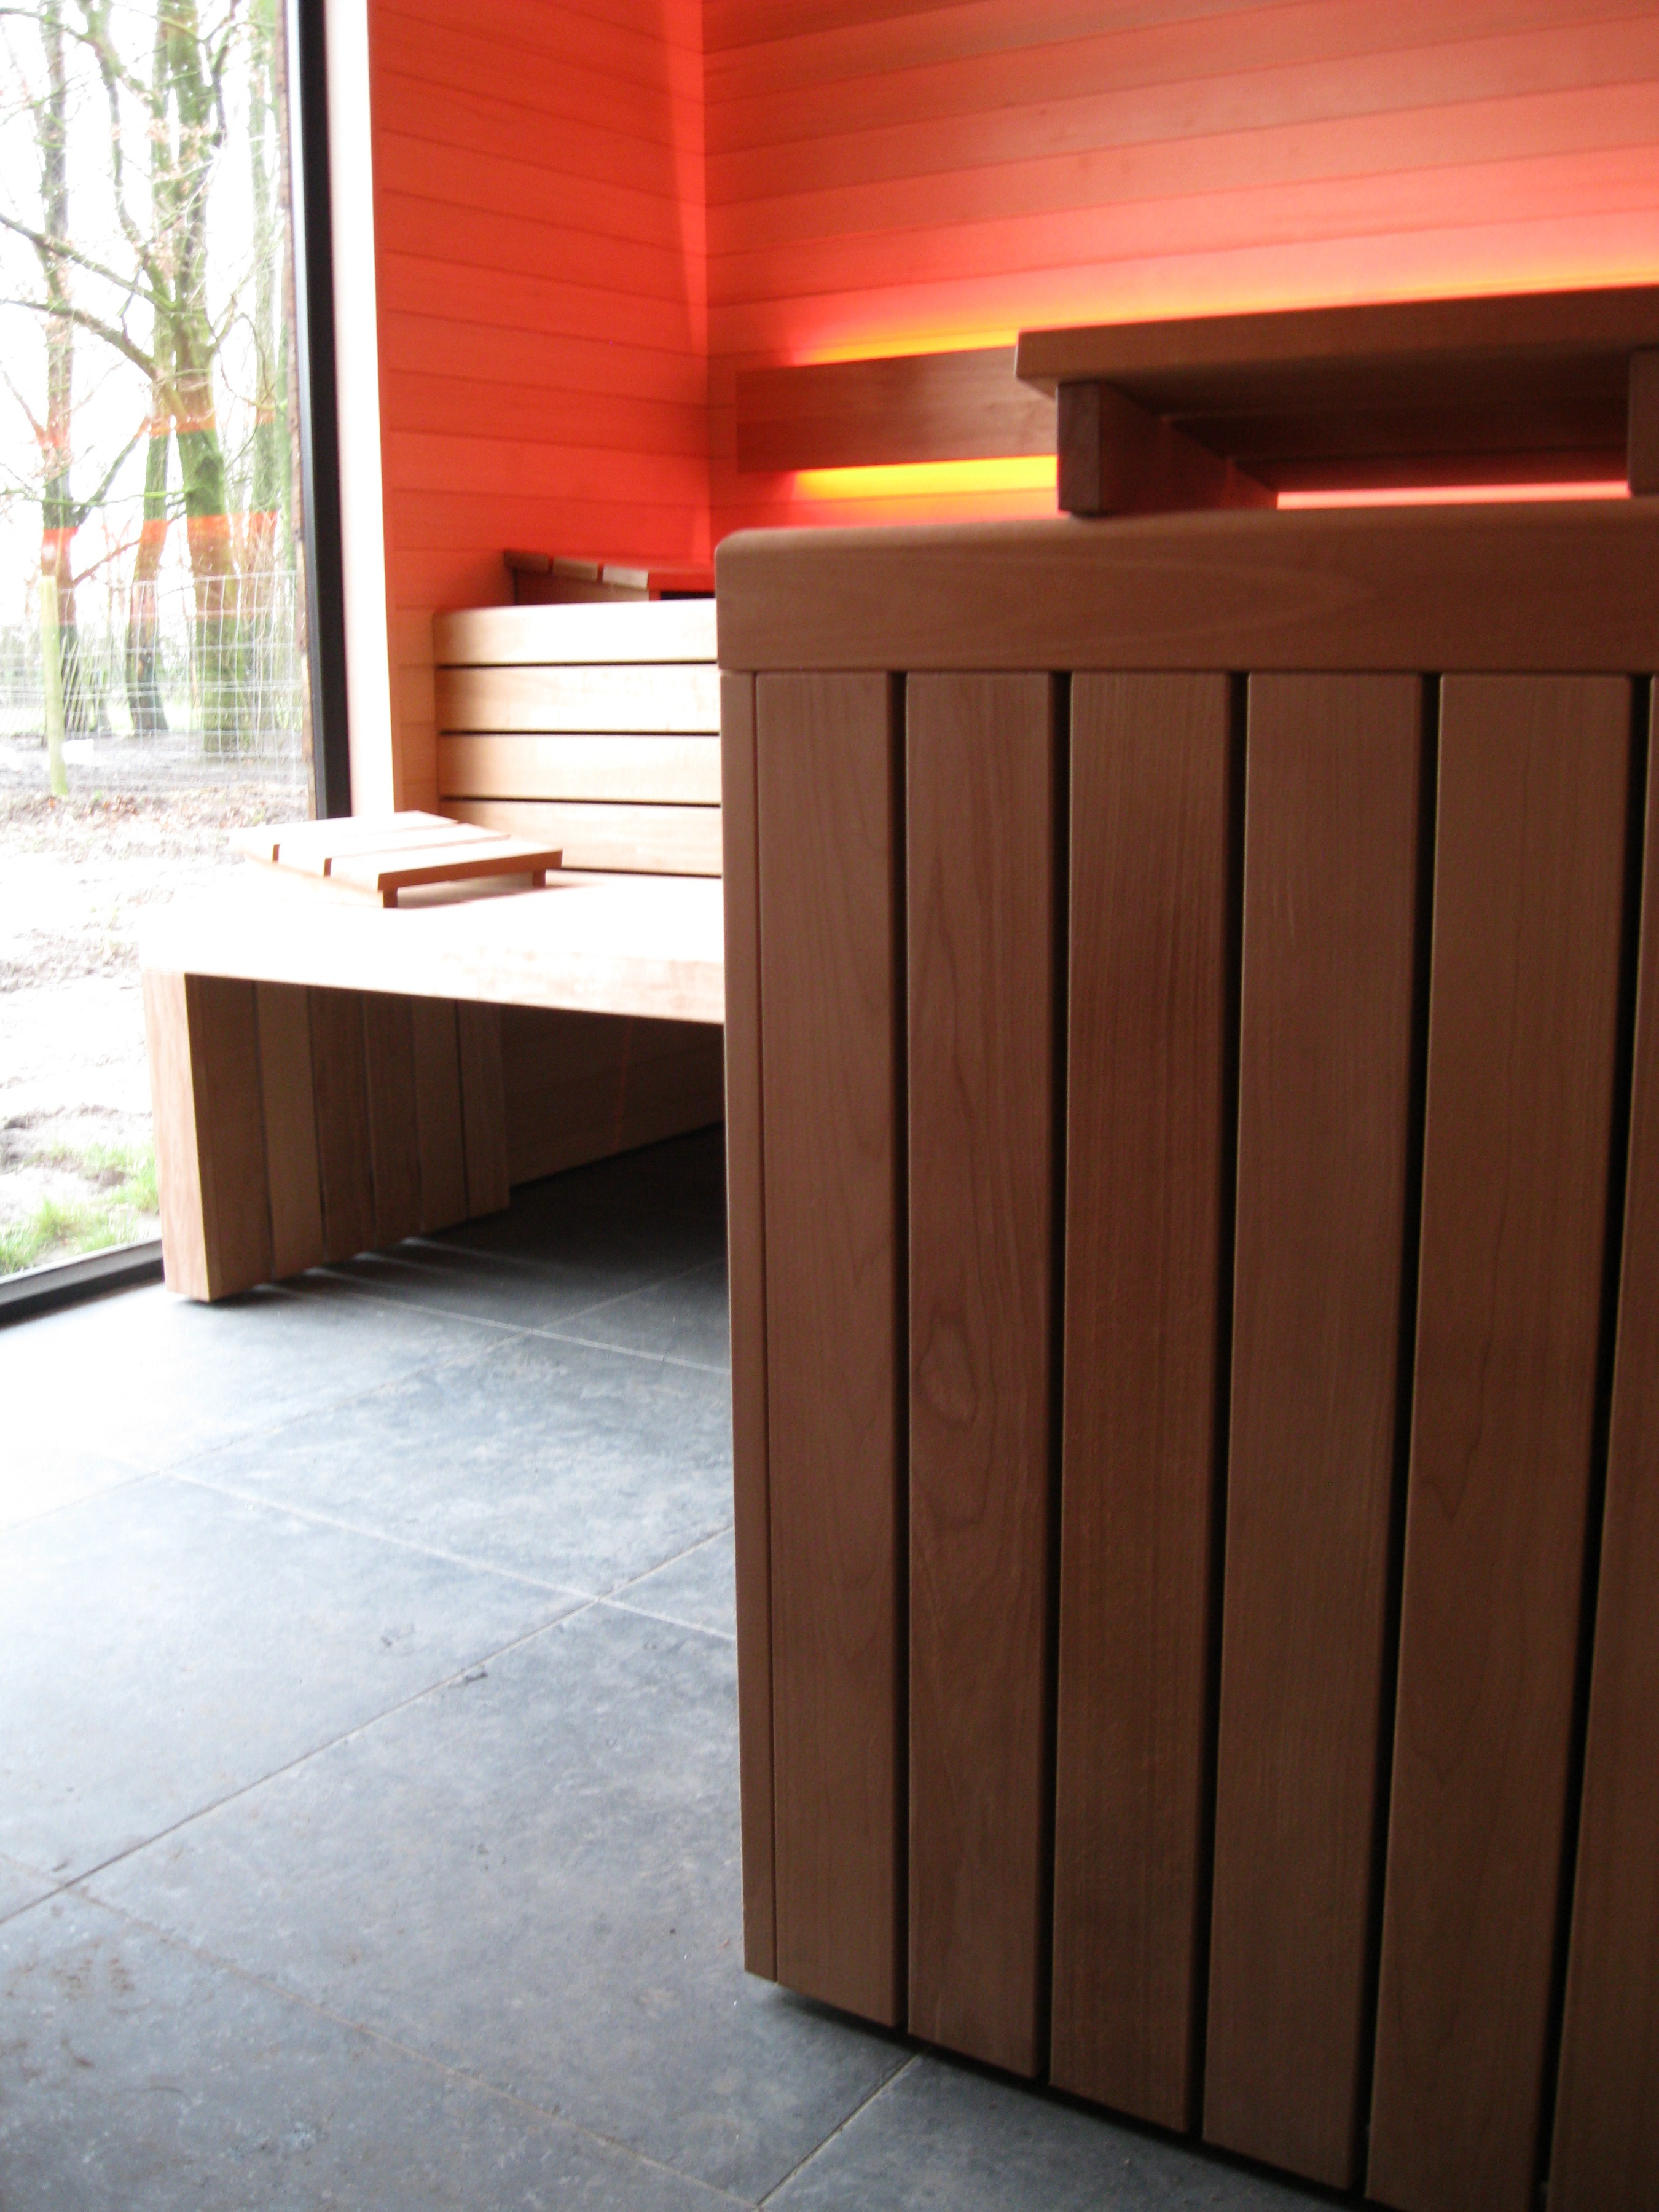 sauna-met-raam-op-maat-kopen-hanolux-antwerpen-turnhout-zicht-op-tuin-1.jpg